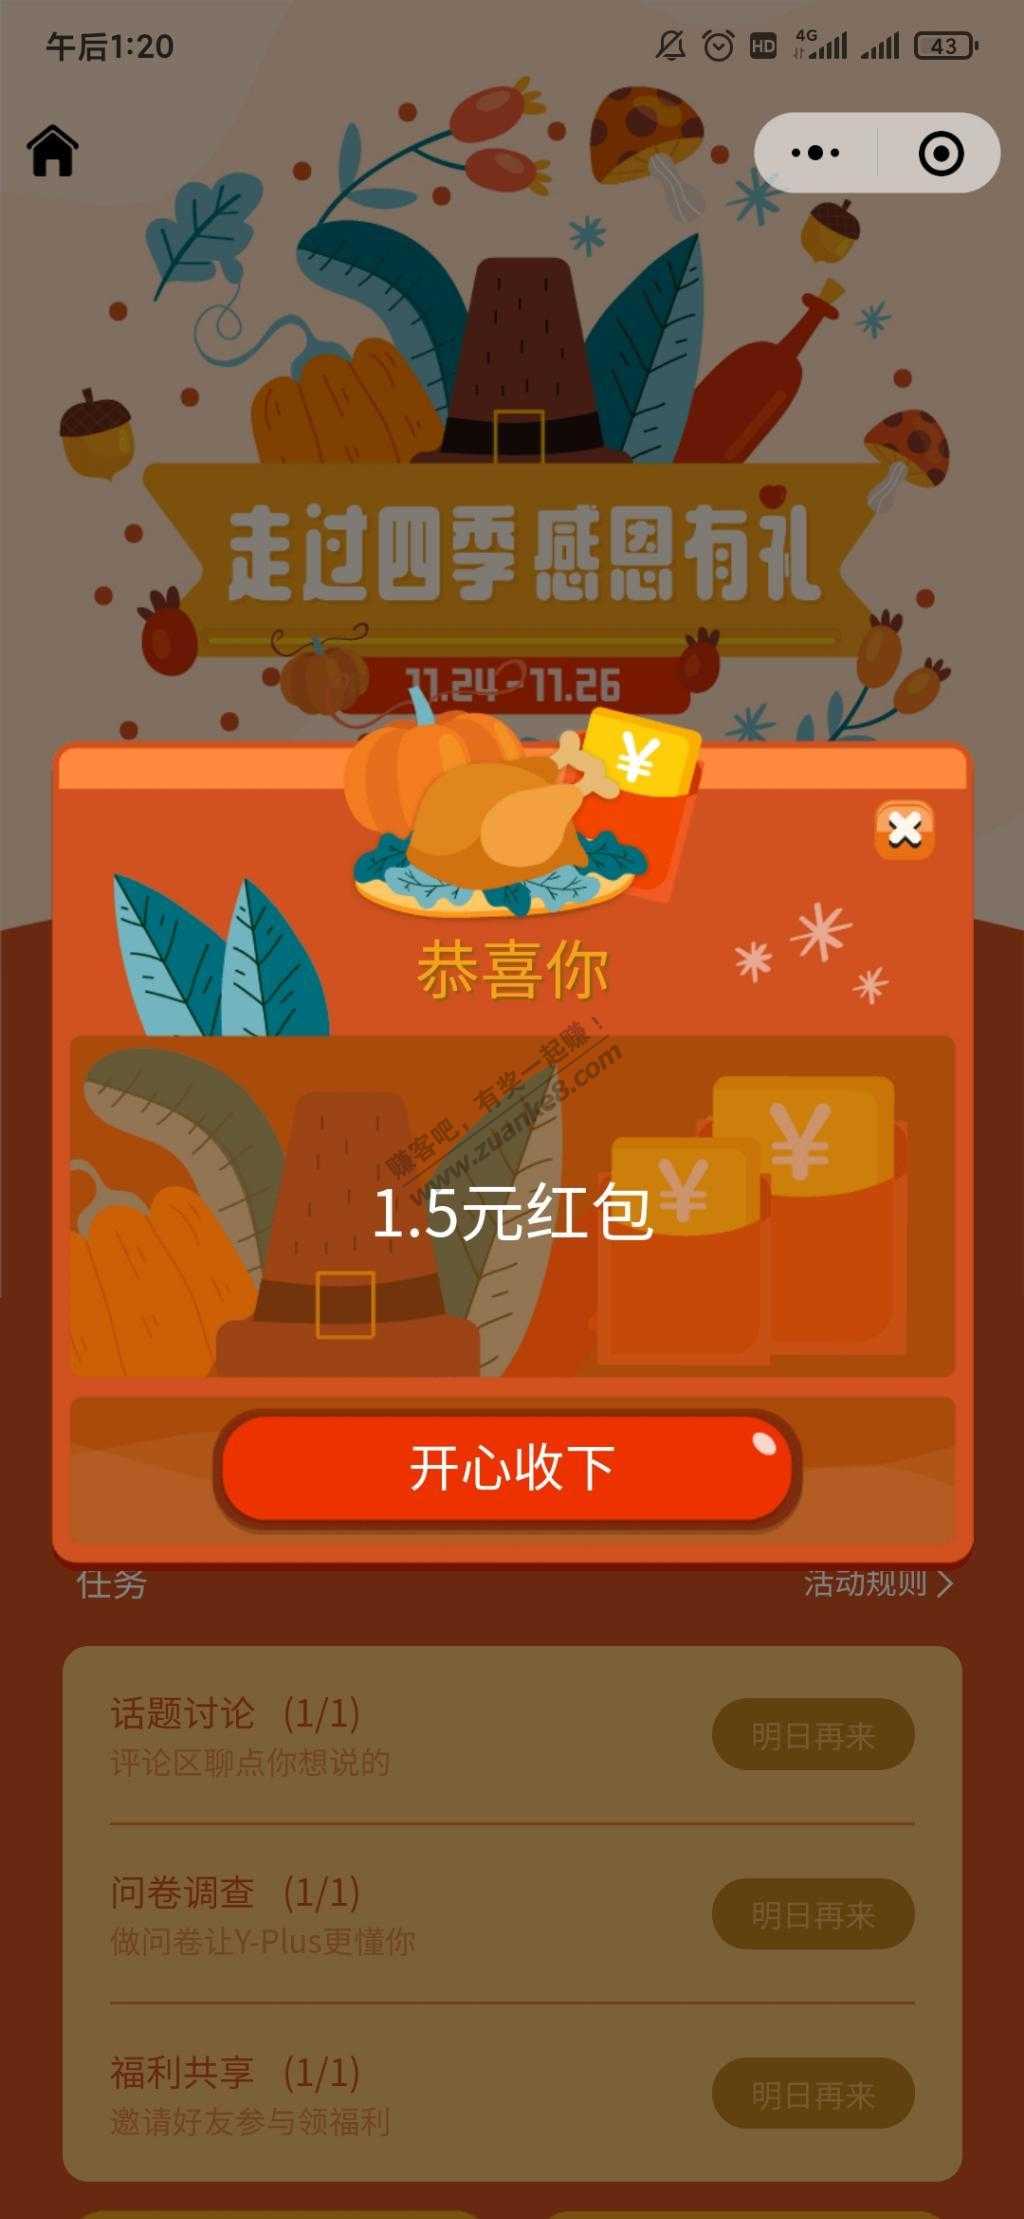 伊利微信1-10红包-惠小助(52huixz.com)